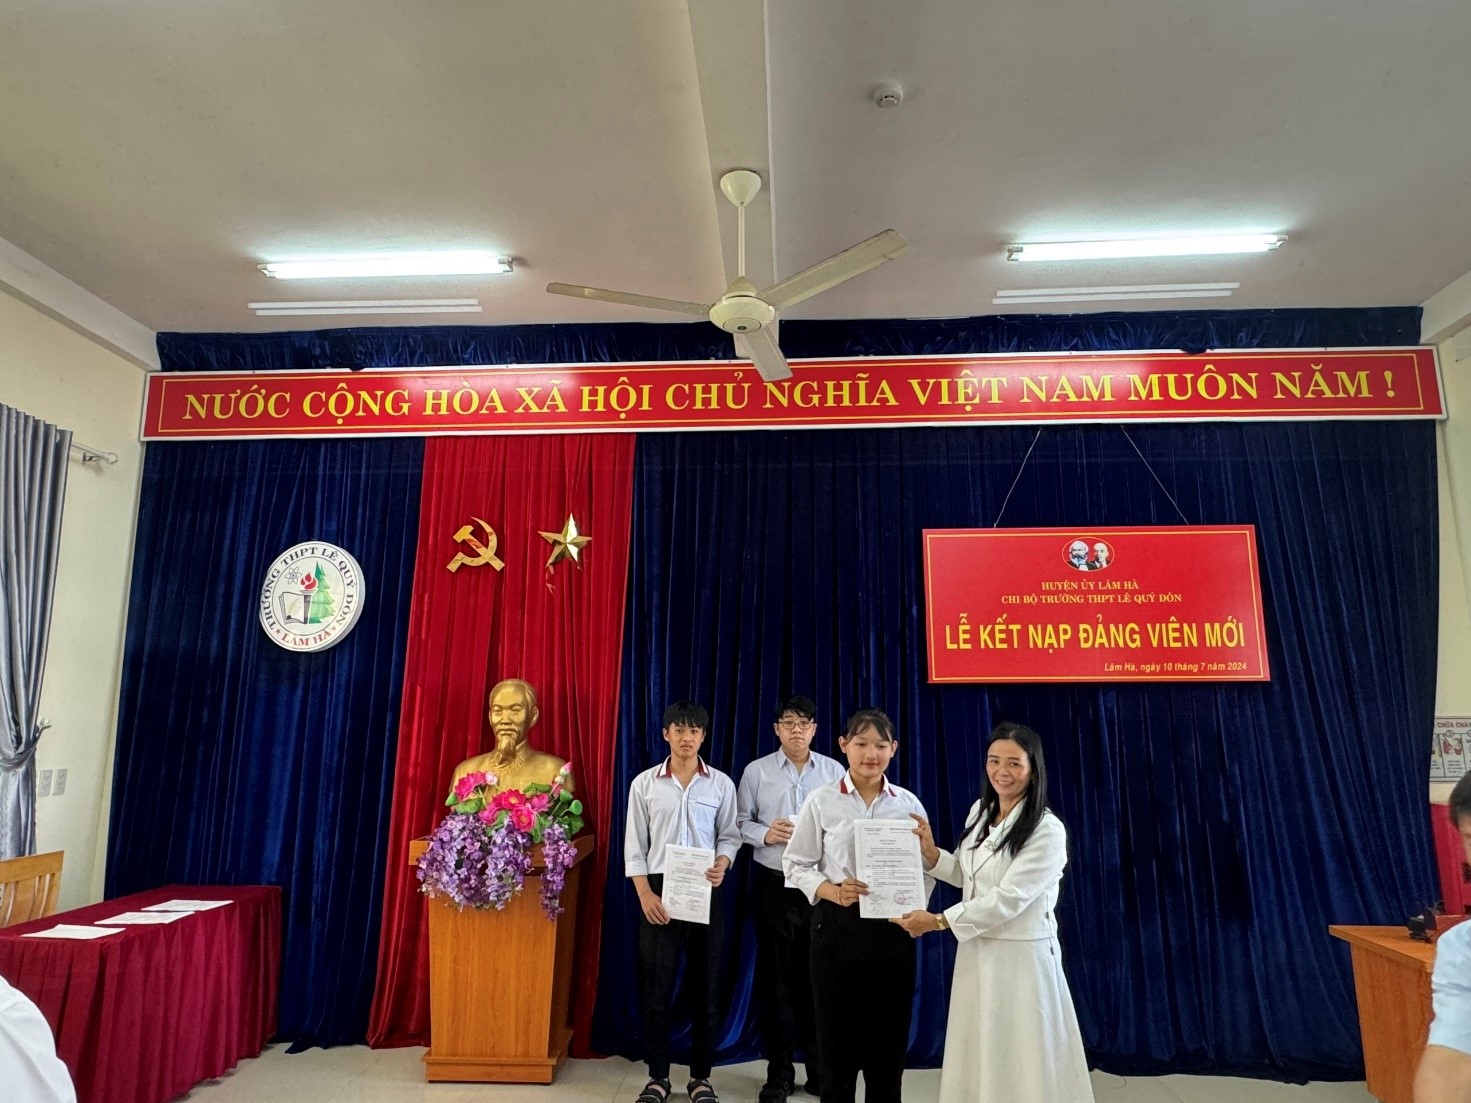 Trường THPT Lê Quý Đôn huyện Lâm Hà: 03 học sinh được kết nạp Đảng